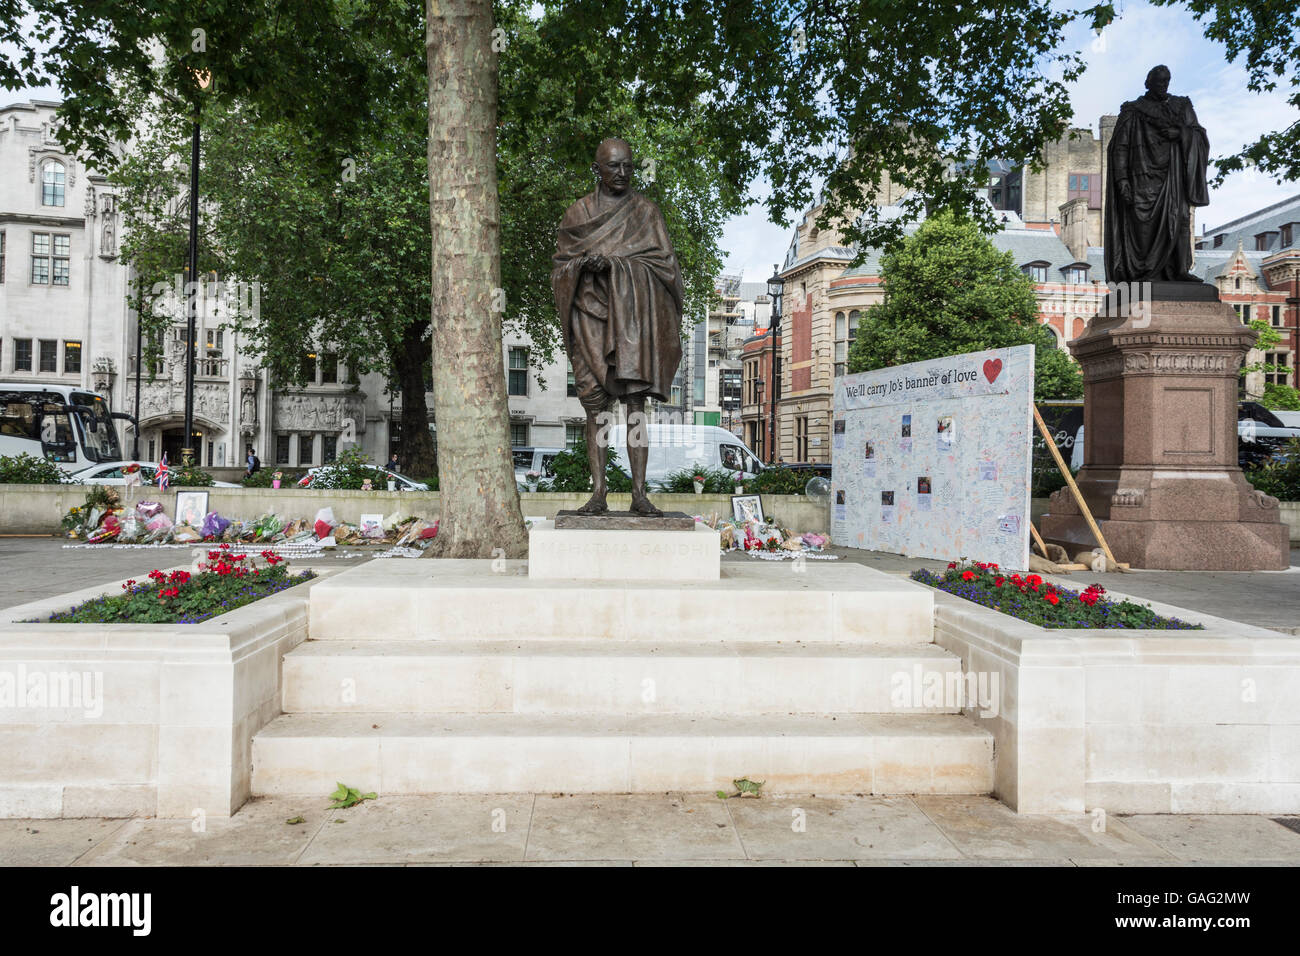 Tributs floraux et des souvenirs à Jo Cox dans Parliament Square, London, England, UK Banque D'Images